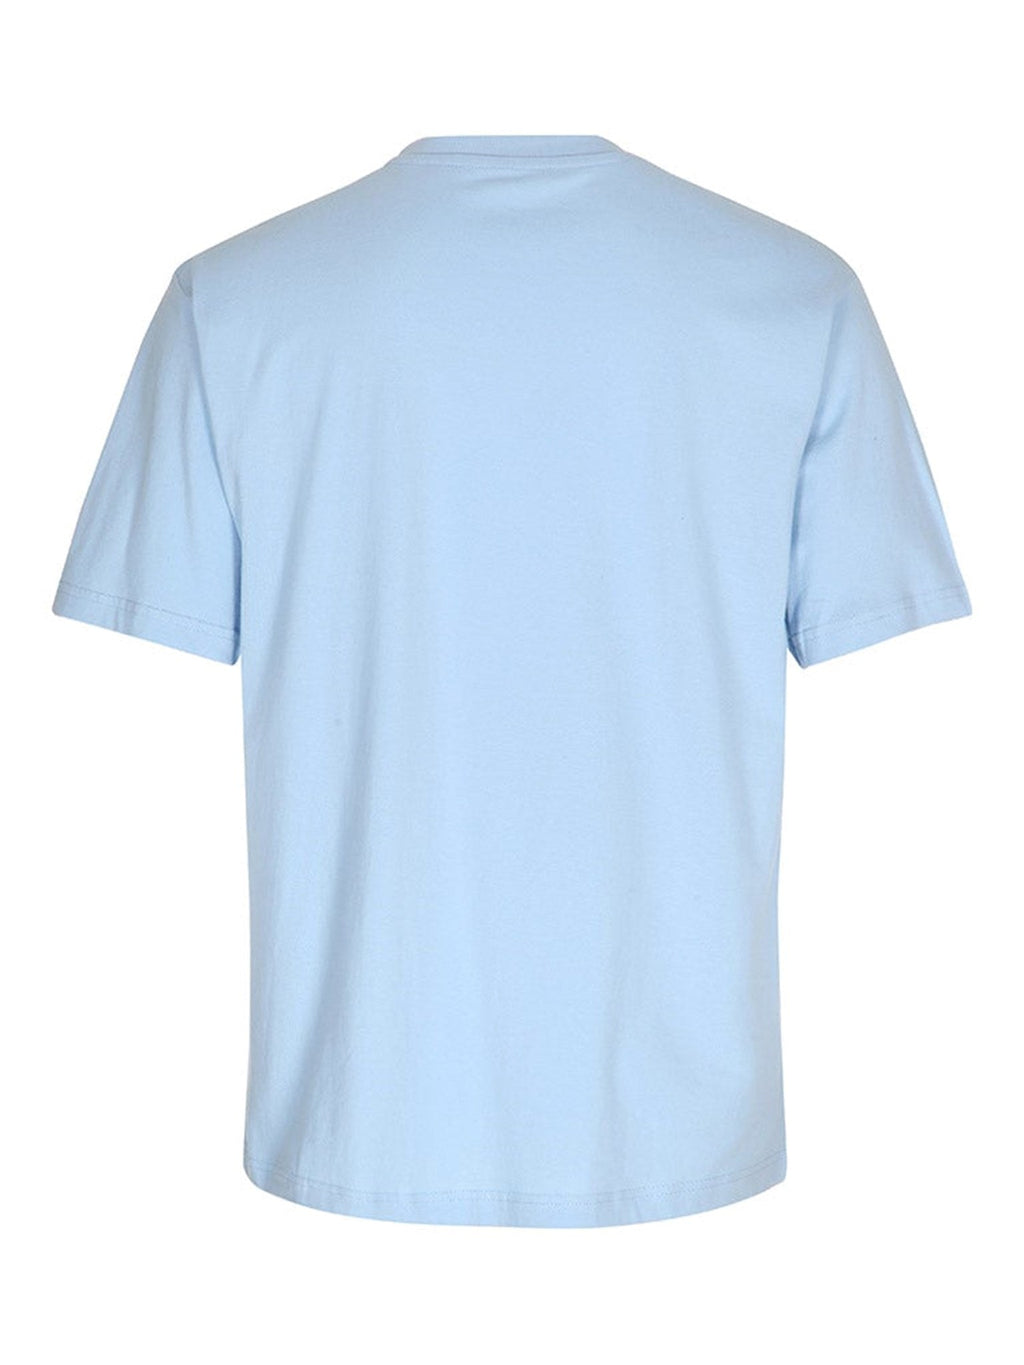 Υπερμεγέθη μπλουζάκι - ανοιχτό μπλε (γυναίκες)